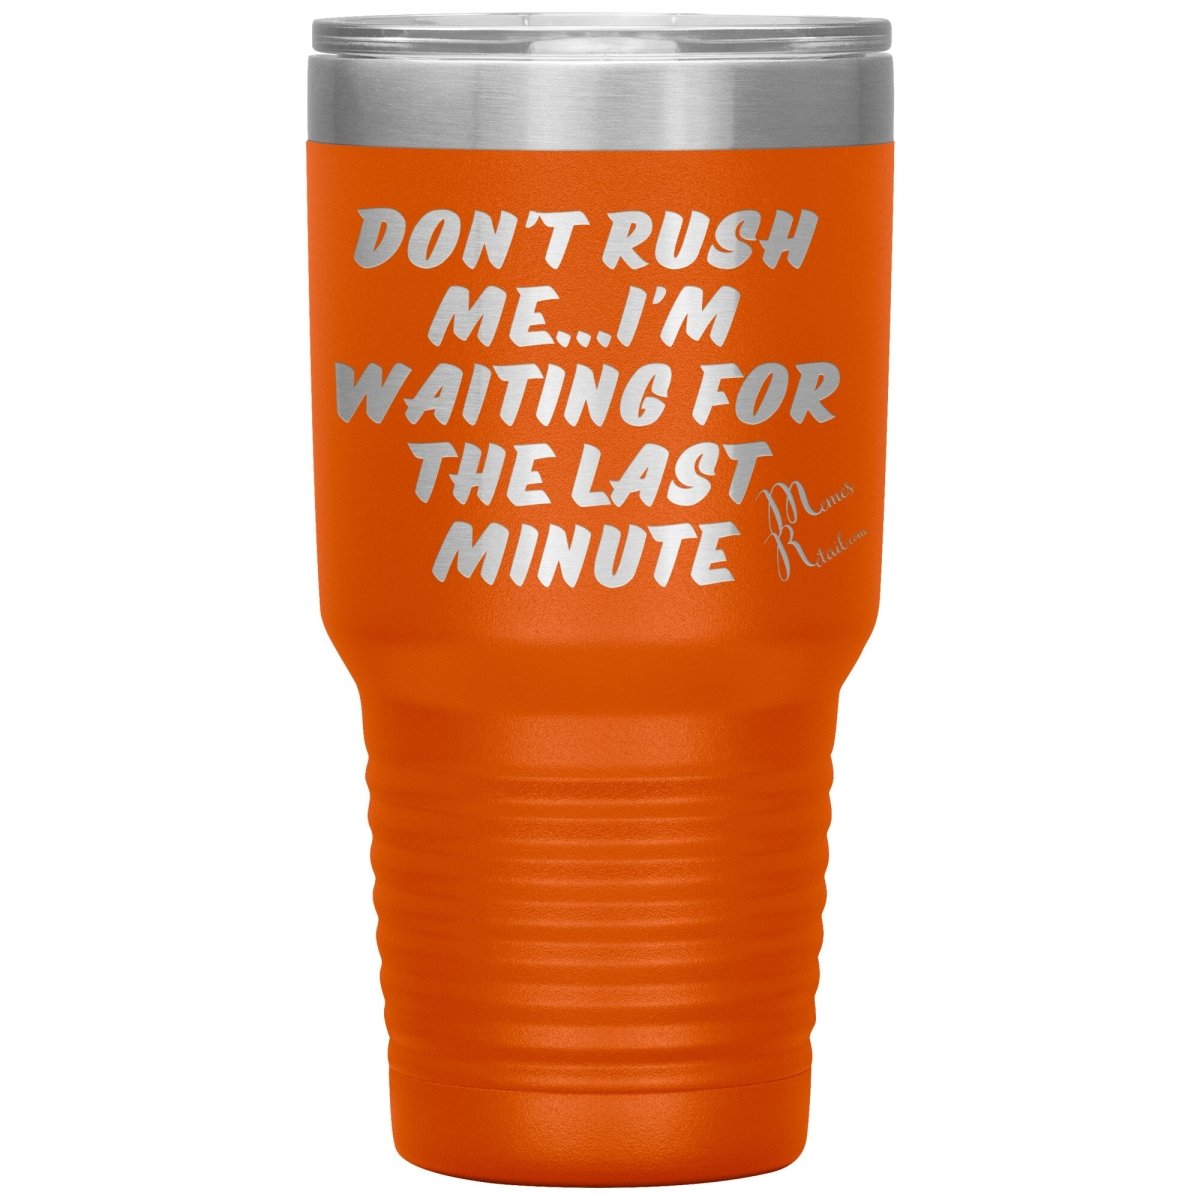 Don't Rush Me... I'm Waiting For The Last Minute Tumbers, 30oz Insulated Tumbler / Orange - MemesRetail.com